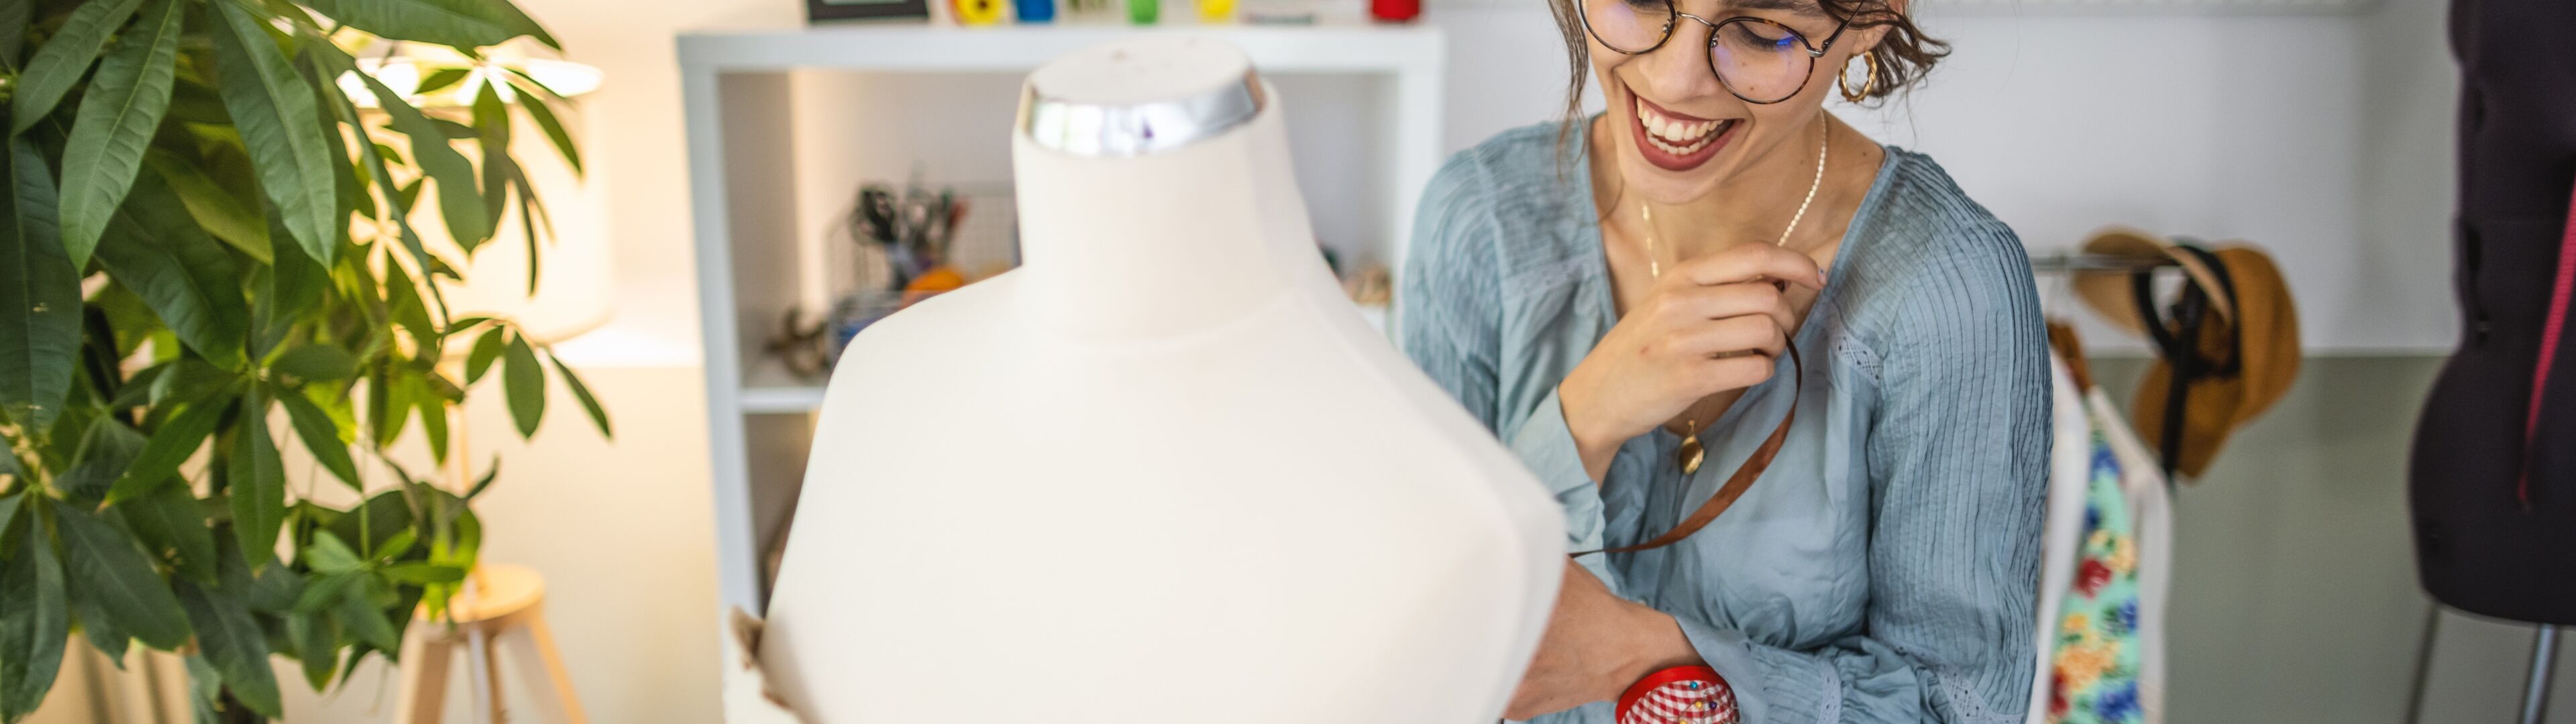 Une créatrice de mode souriante ajuste un mannequin dans son atelier lumineux et plein de plantes, entourée d'esquisses de mode.